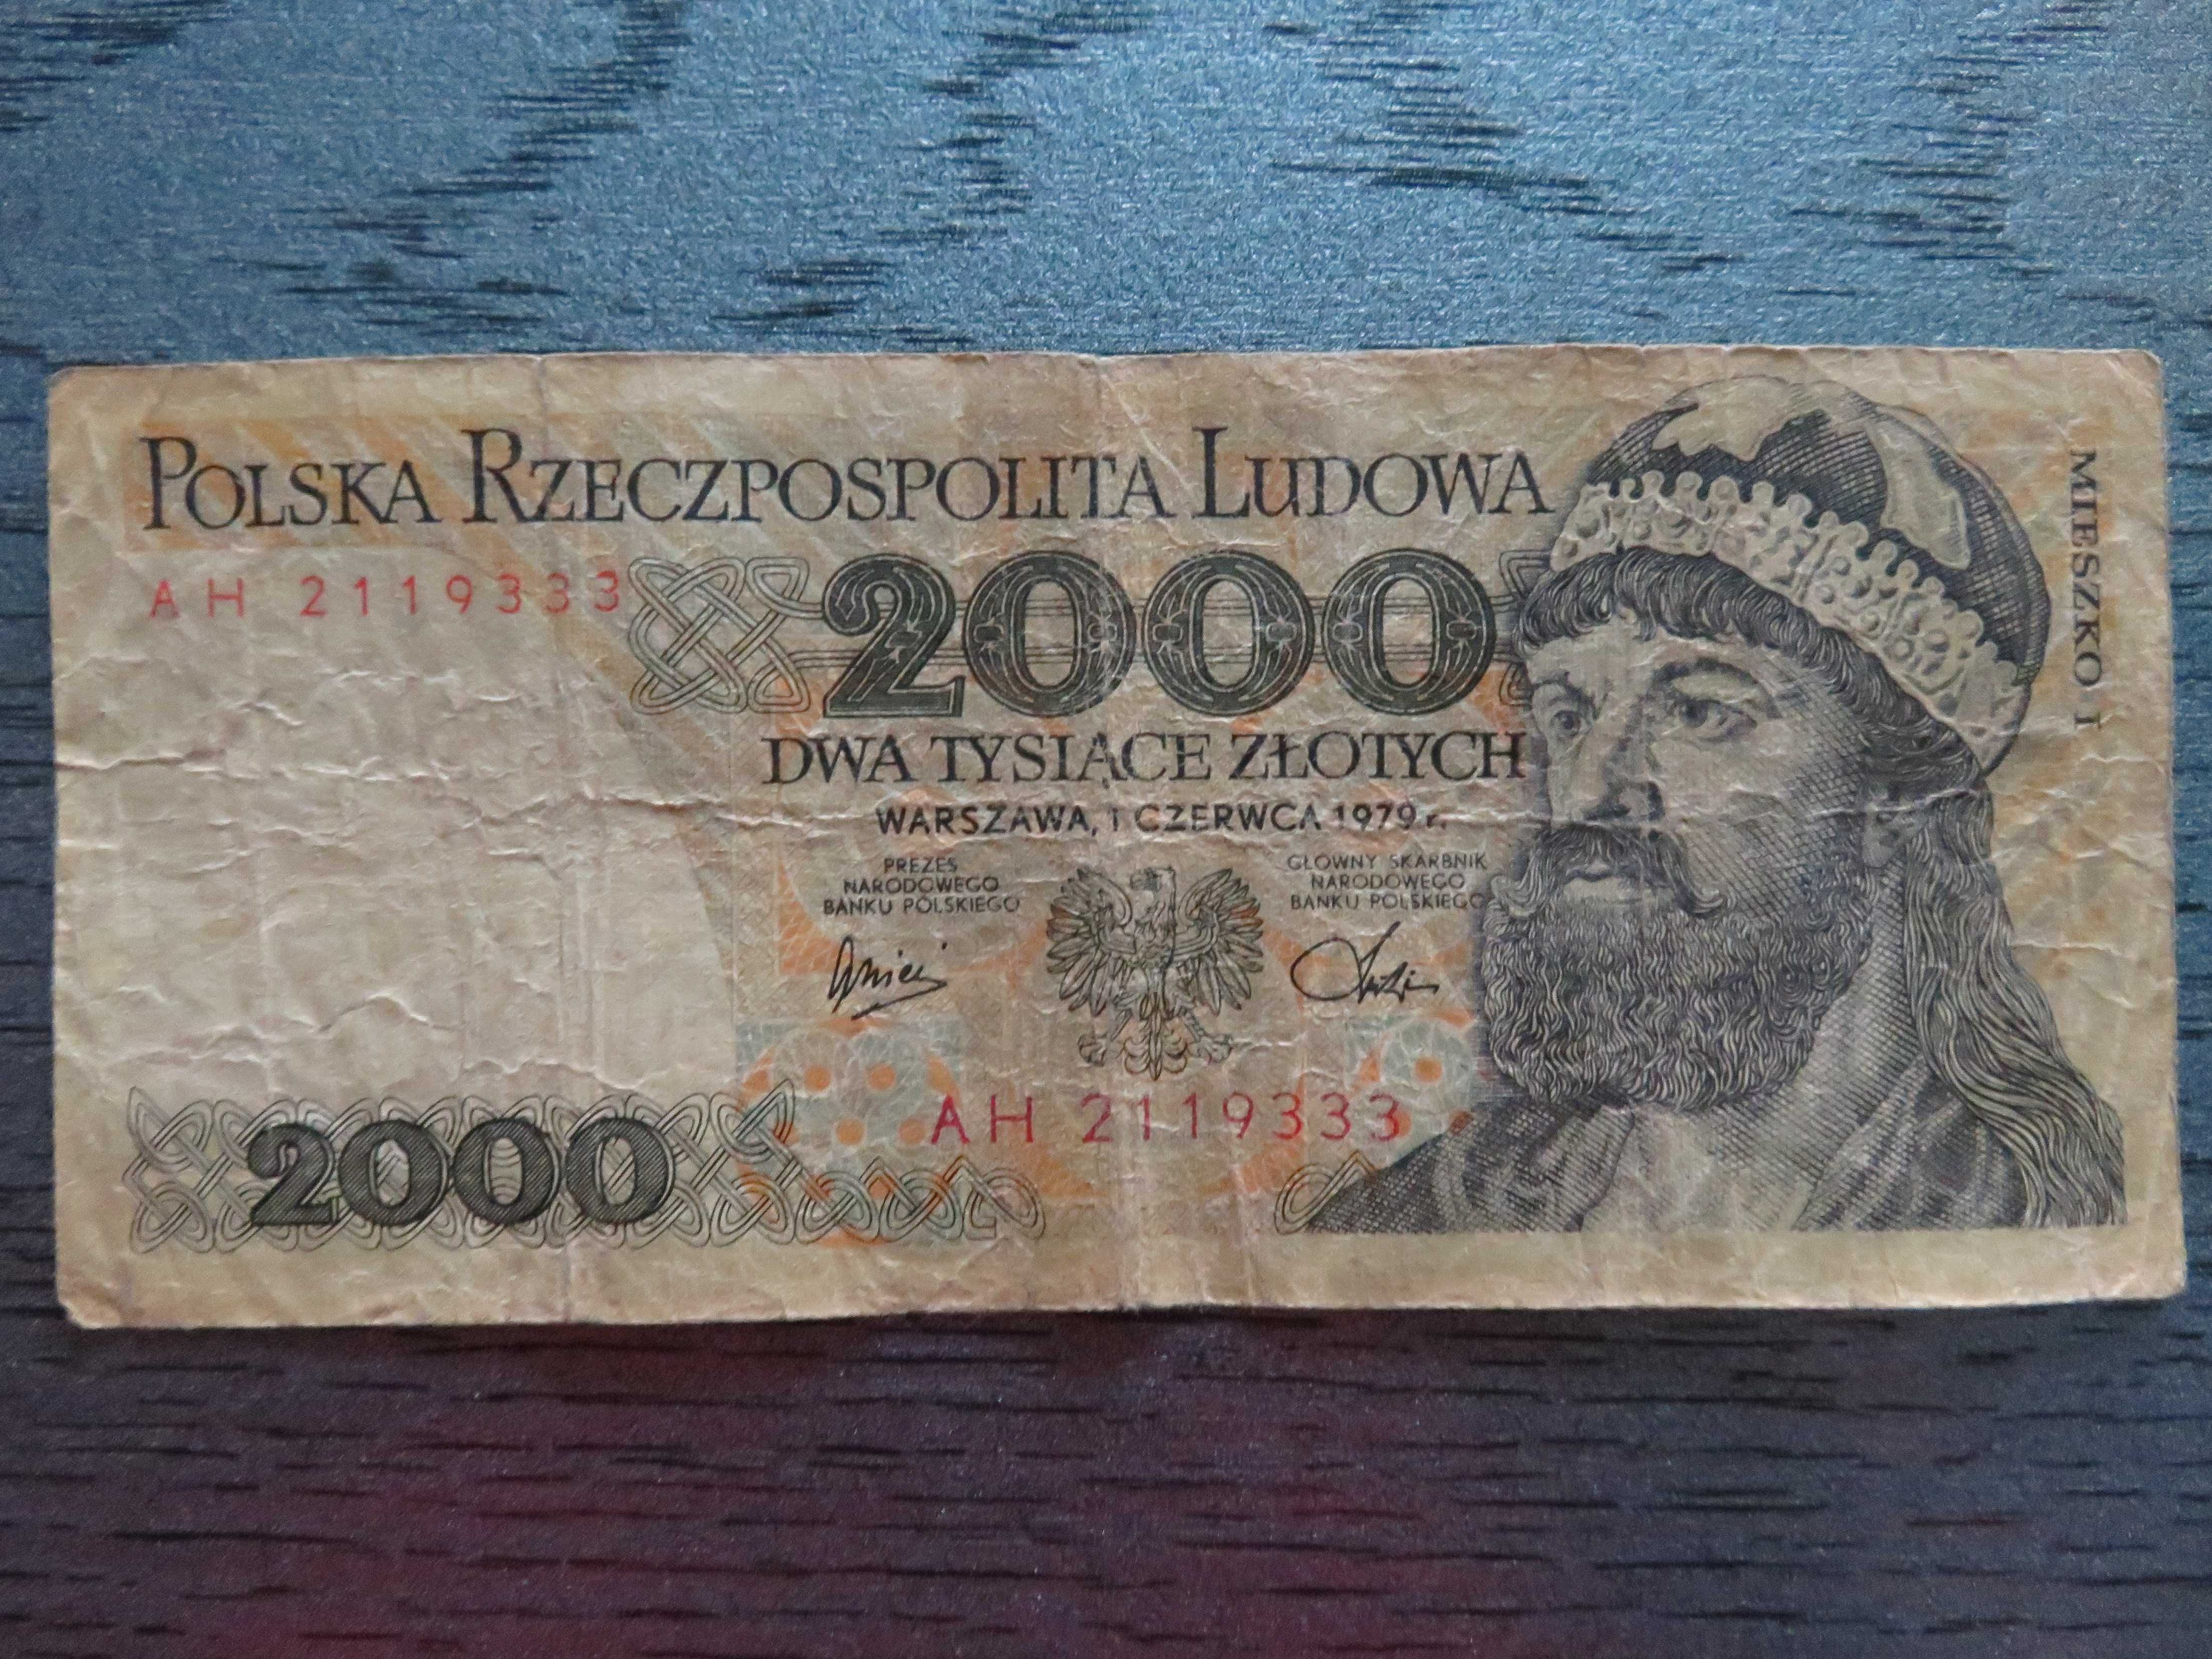 Oferuję kolekcjonerski banknot PRL 2000 zł w idealnym stanie! Okazja!!